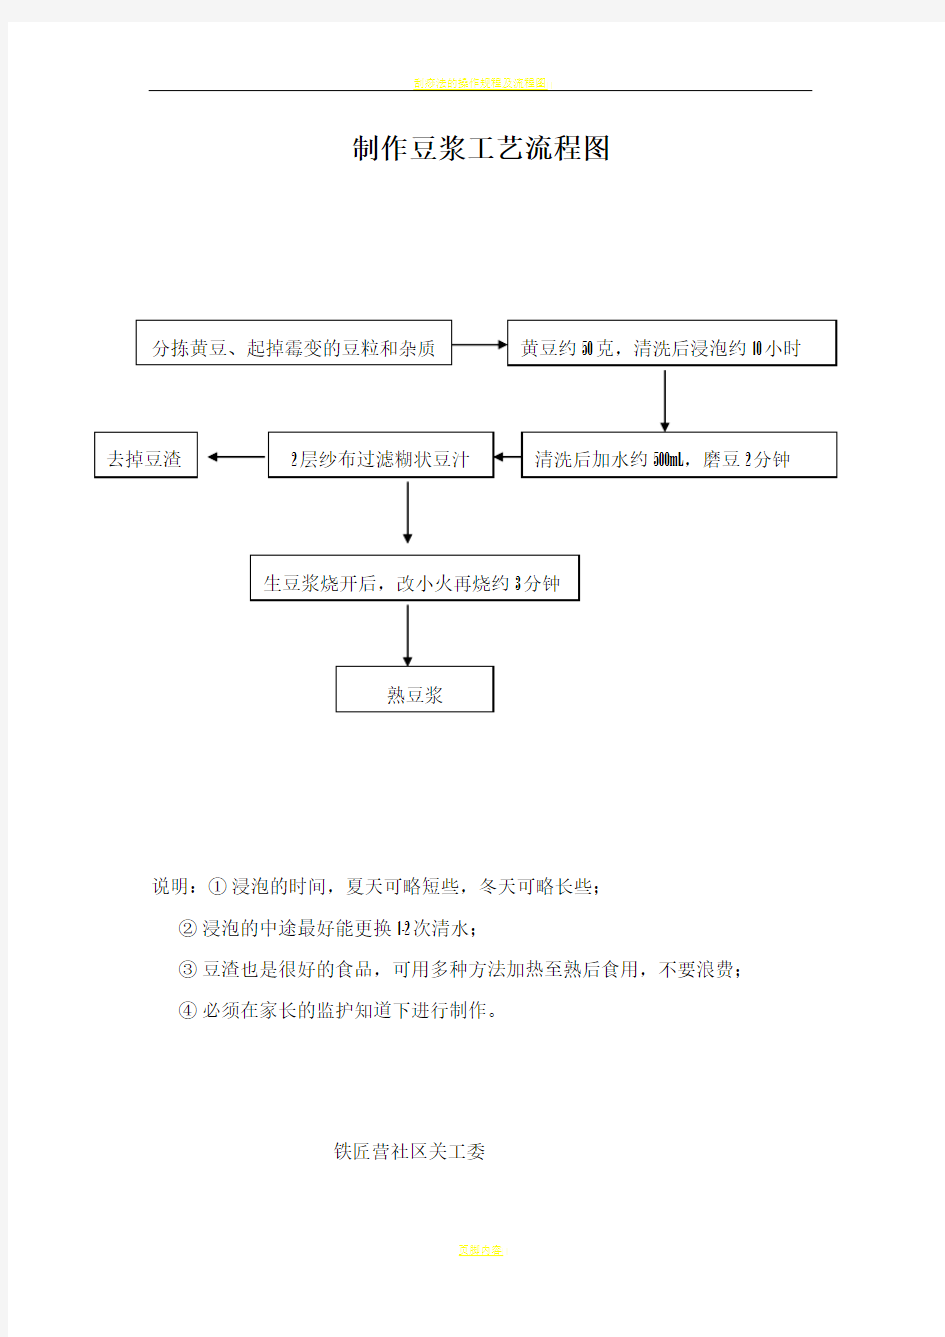 制作豆腐工艺流程图